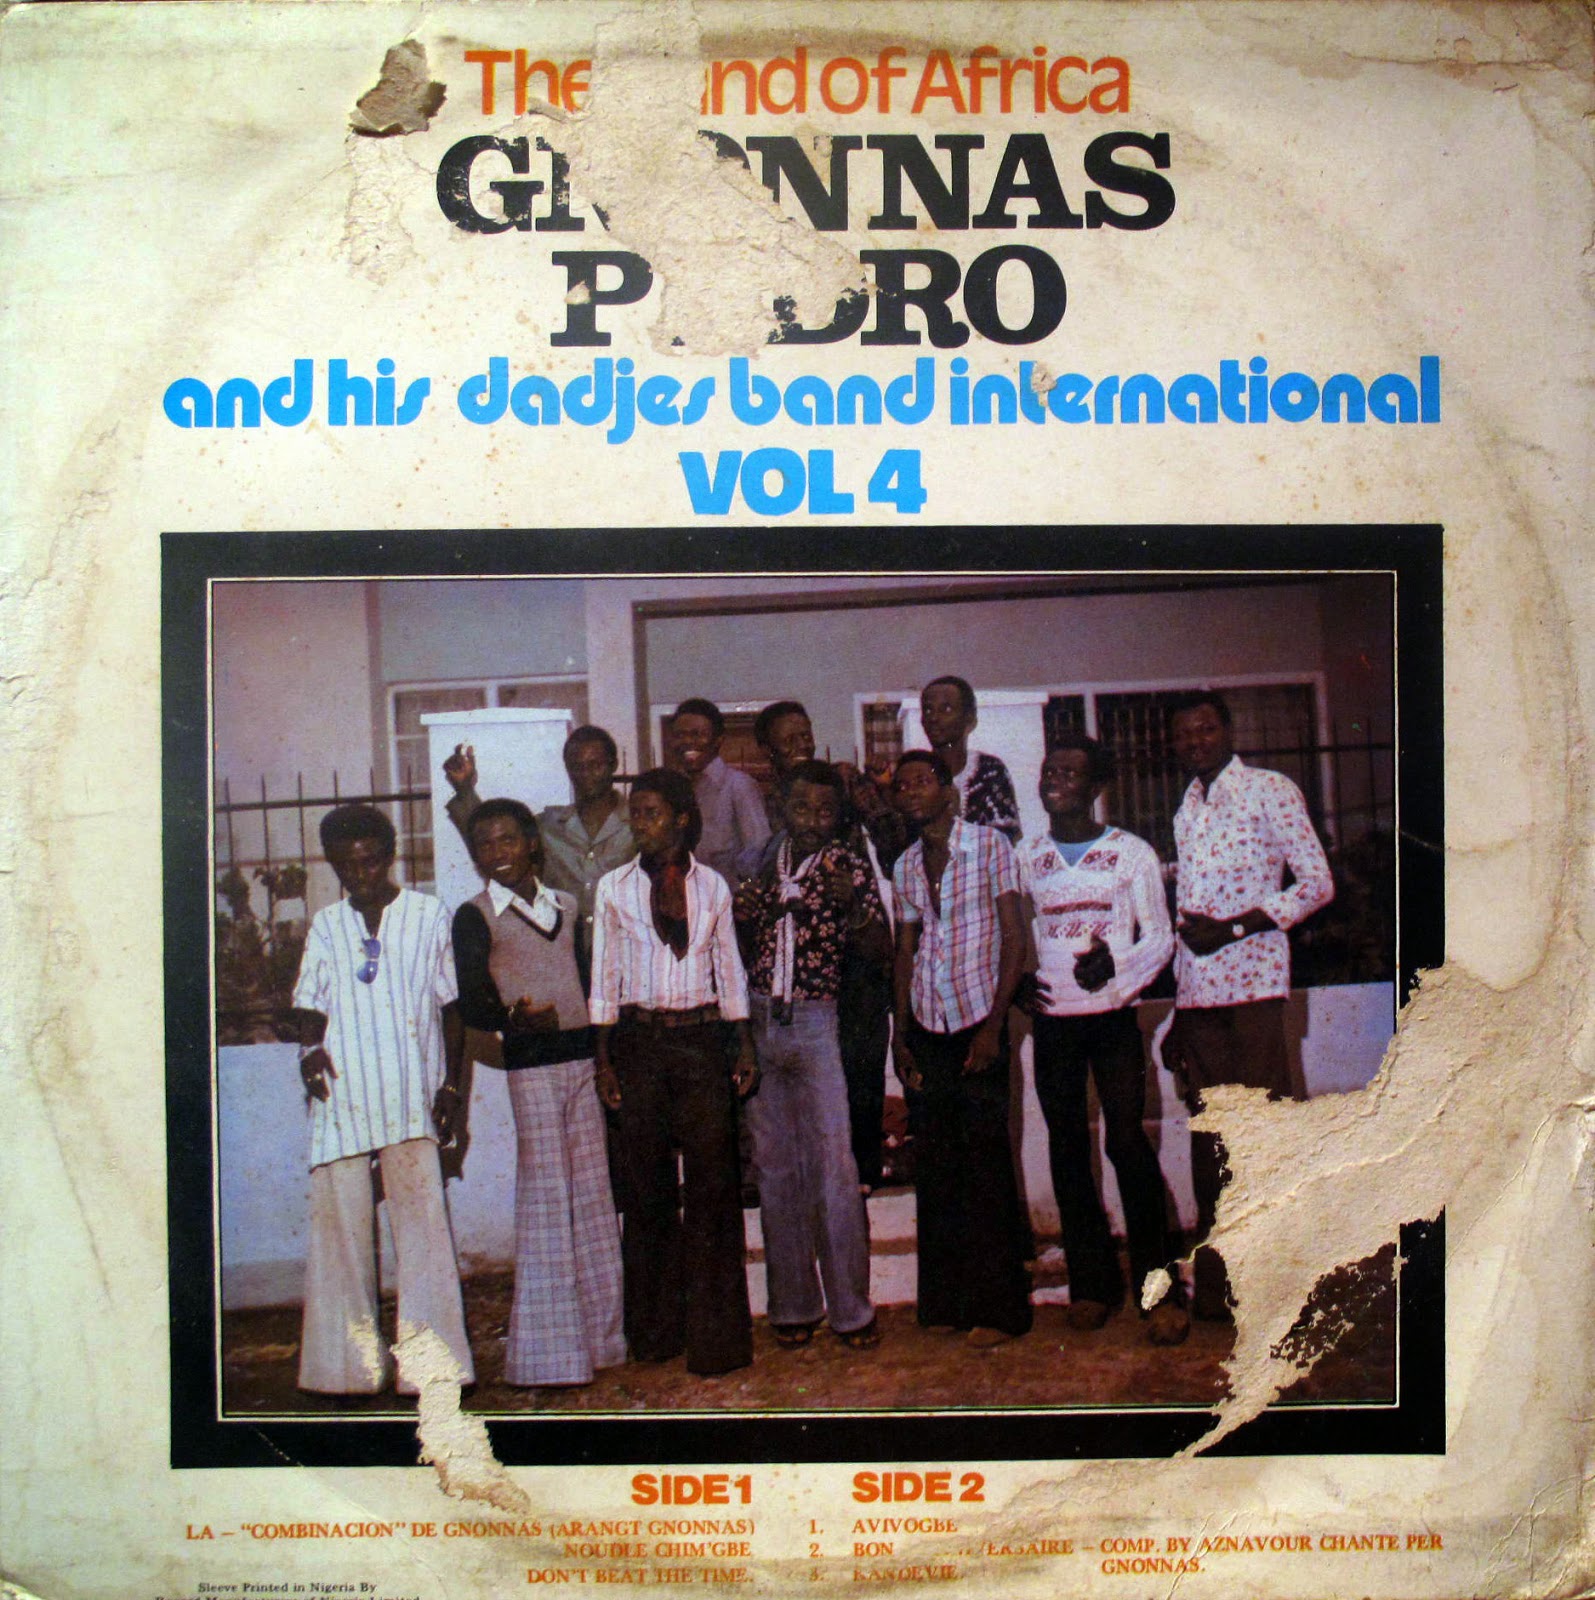 Gnonnas Pedro & His Dadjes Band Vol.4 (1978) Vol%2B4%2B1